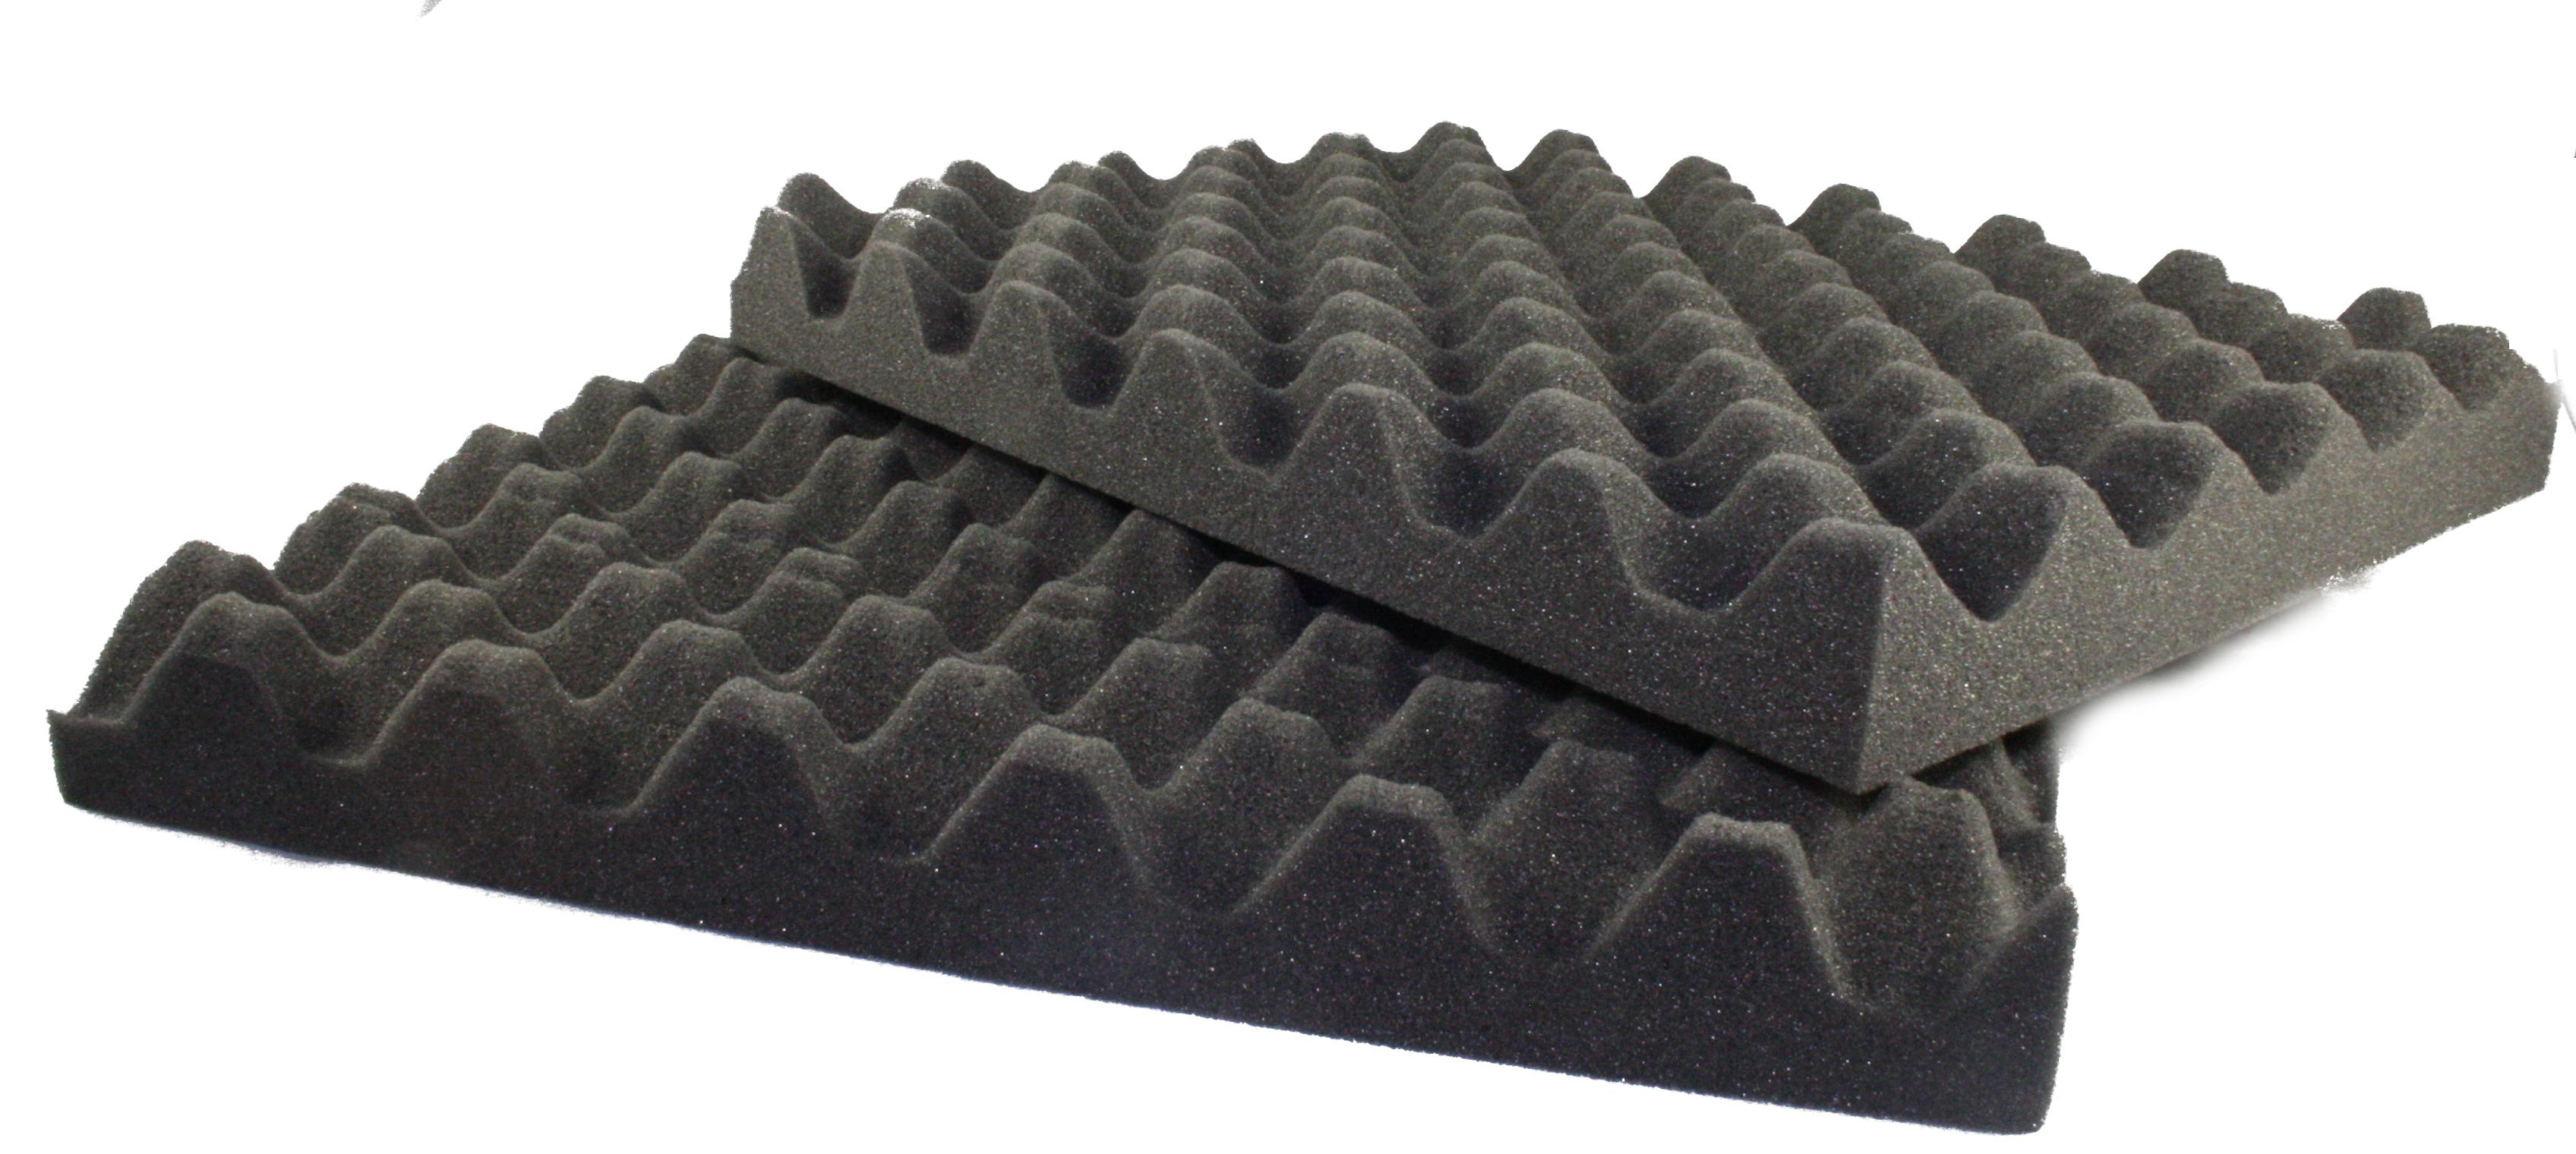 egg shell foam mattress toppers